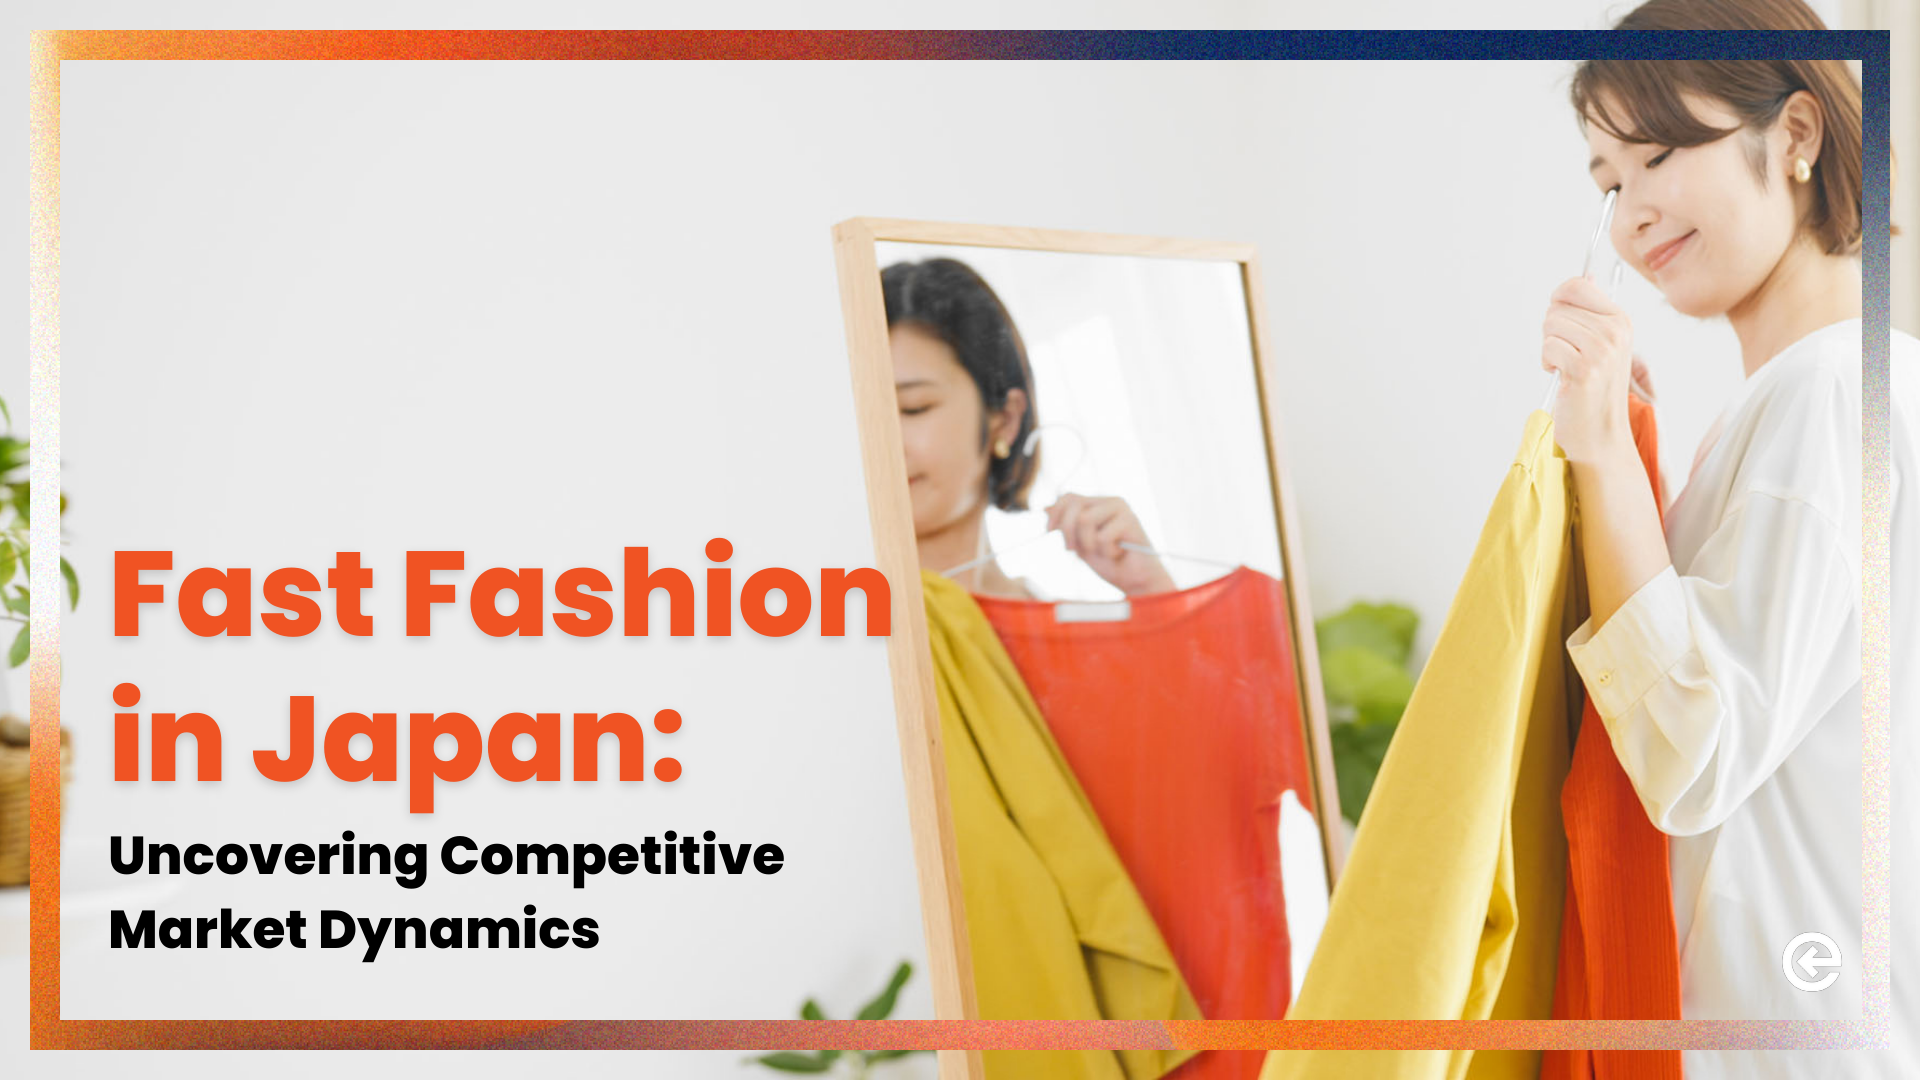 Fast Fashion in Japan: Aufdeckung der Marktdynamik im Wettbewerb